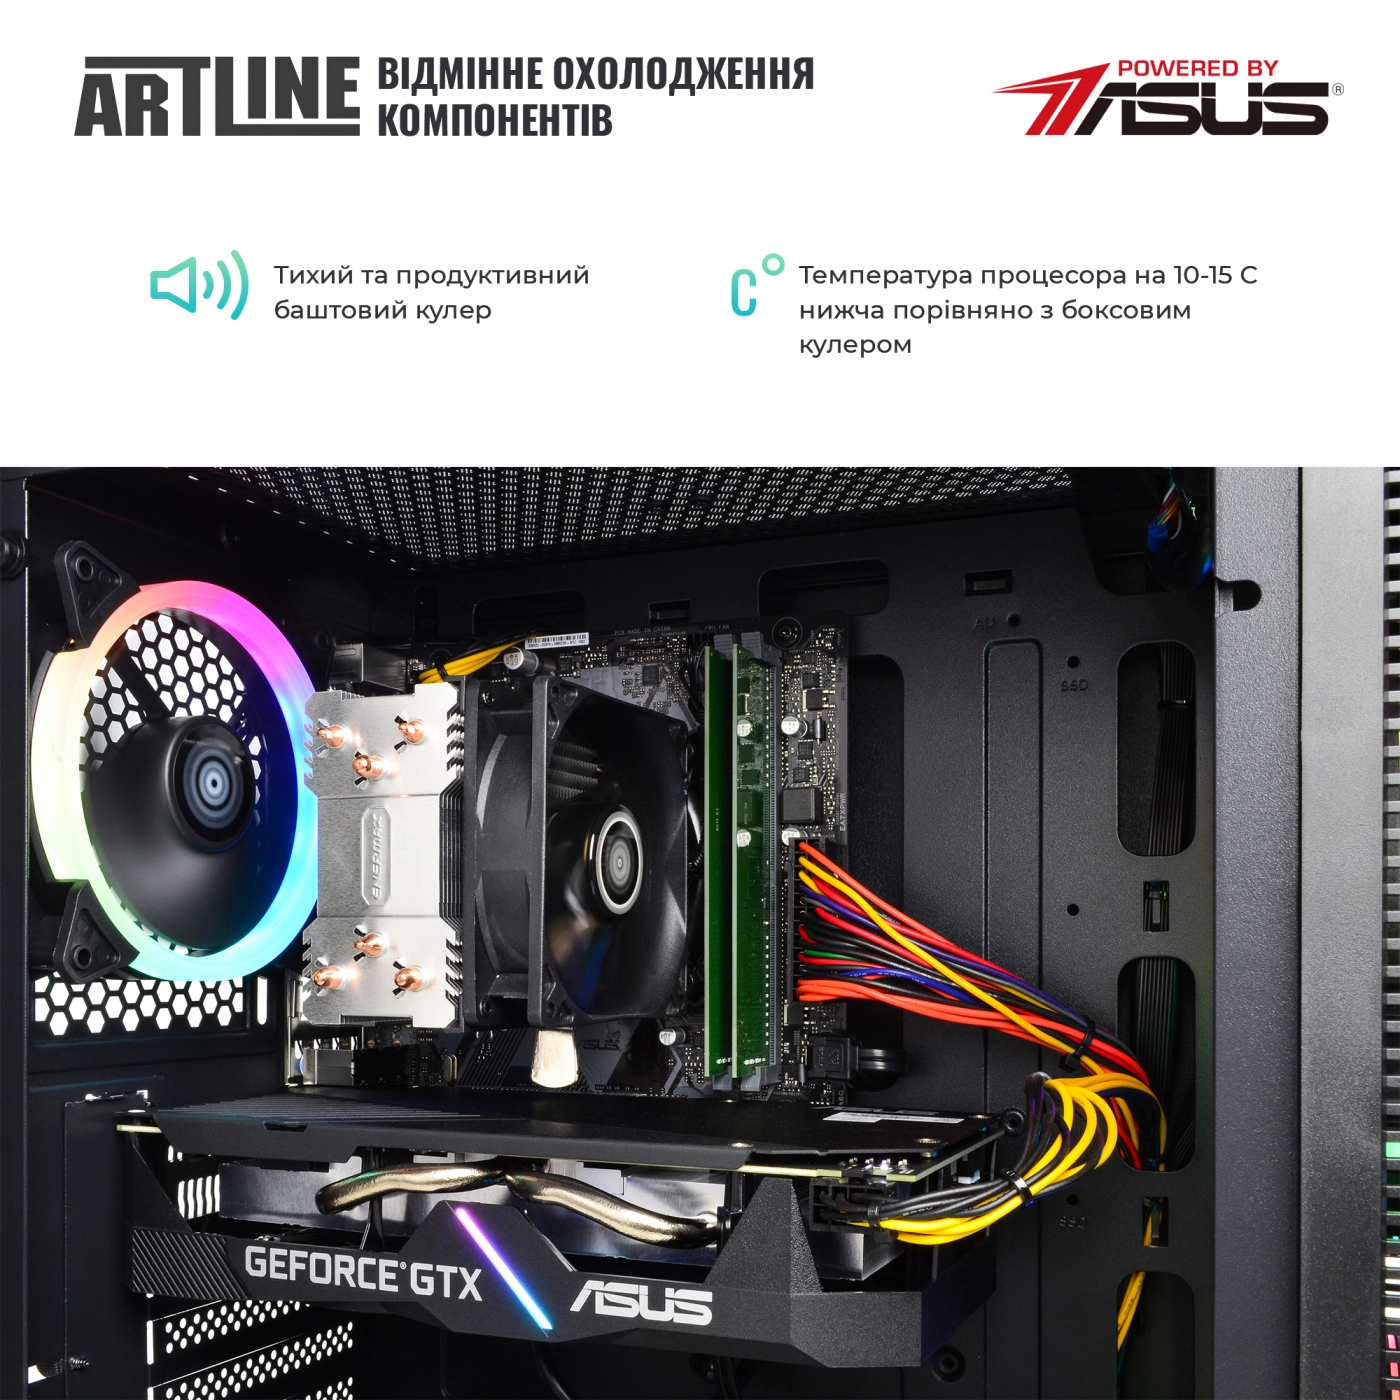 Купить Компьютер ARTLINE Gaming X65v32 - фото 3